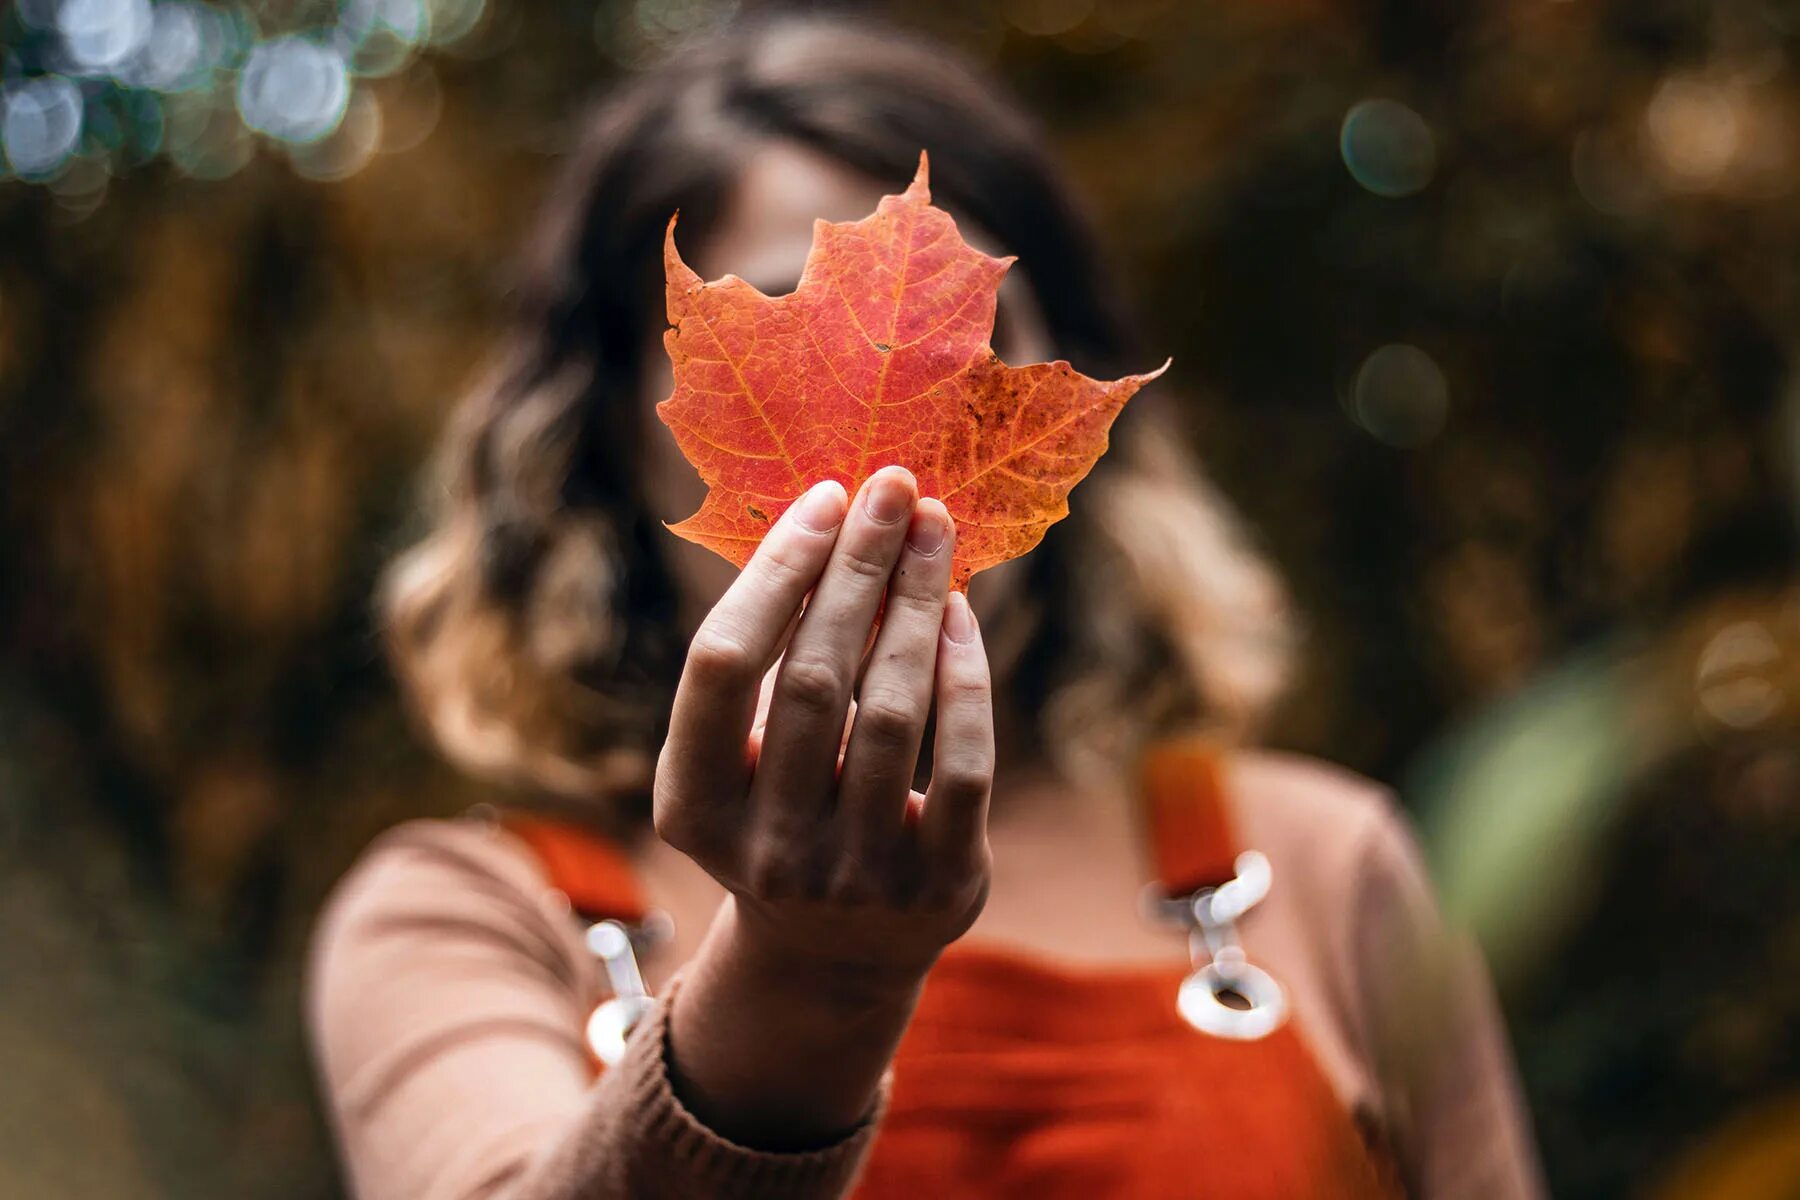 Необыкновенно теплые. Осенние листья в руках девушки. Осень Эстетика. Девочка с кленовыми листьями. Лист в руке.